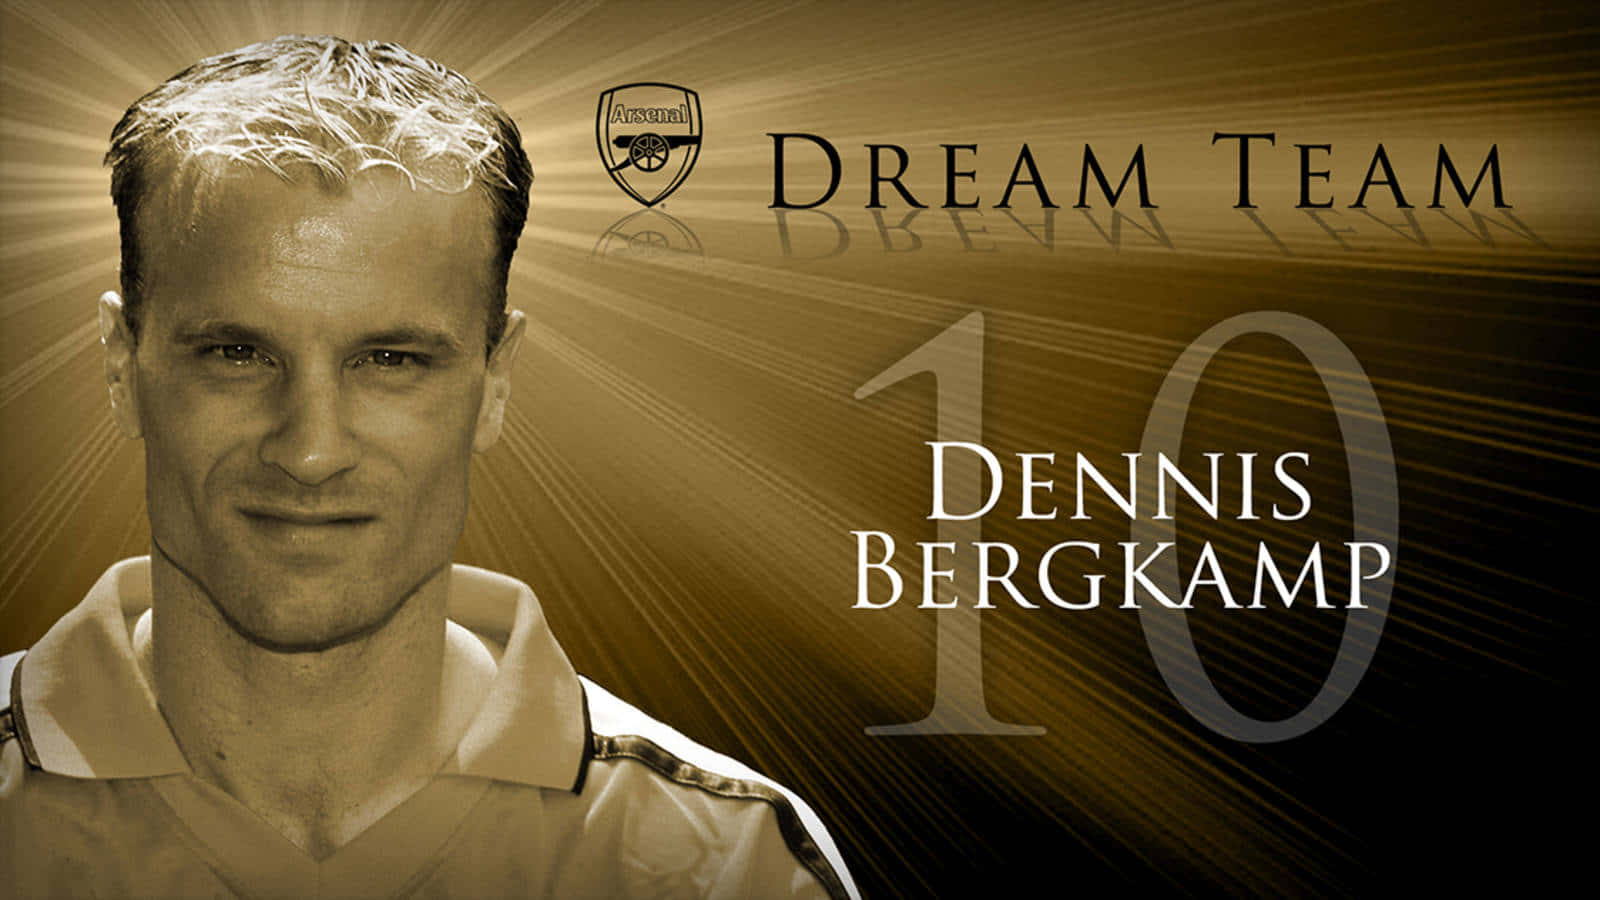 Dennis Bergkamp Arsenal Dream Team Wallpaper